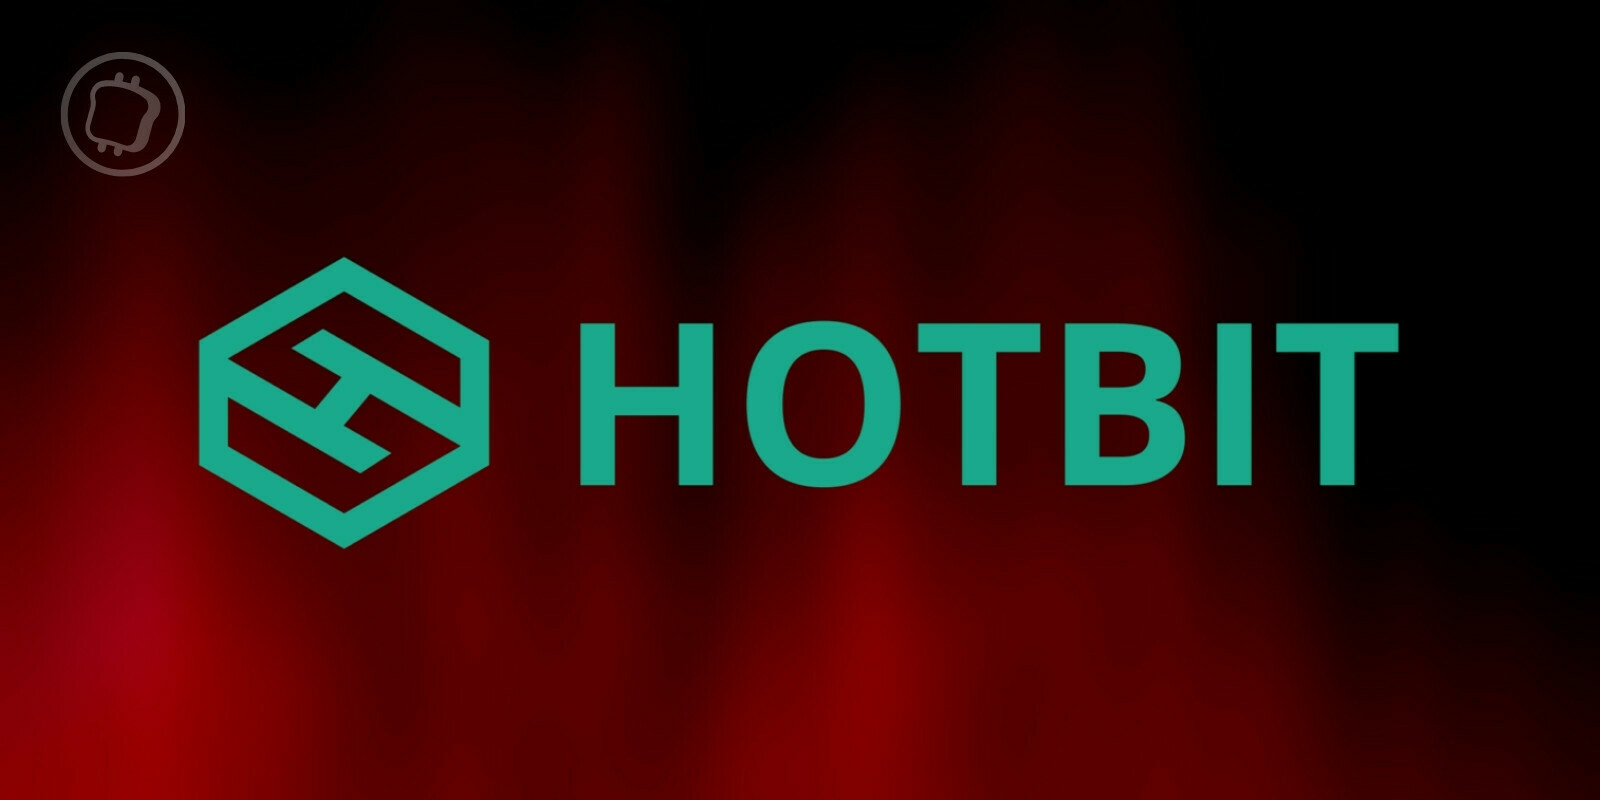 Hotbit gèle les retraits alors que les autorités enquêtent sur un ex-employé